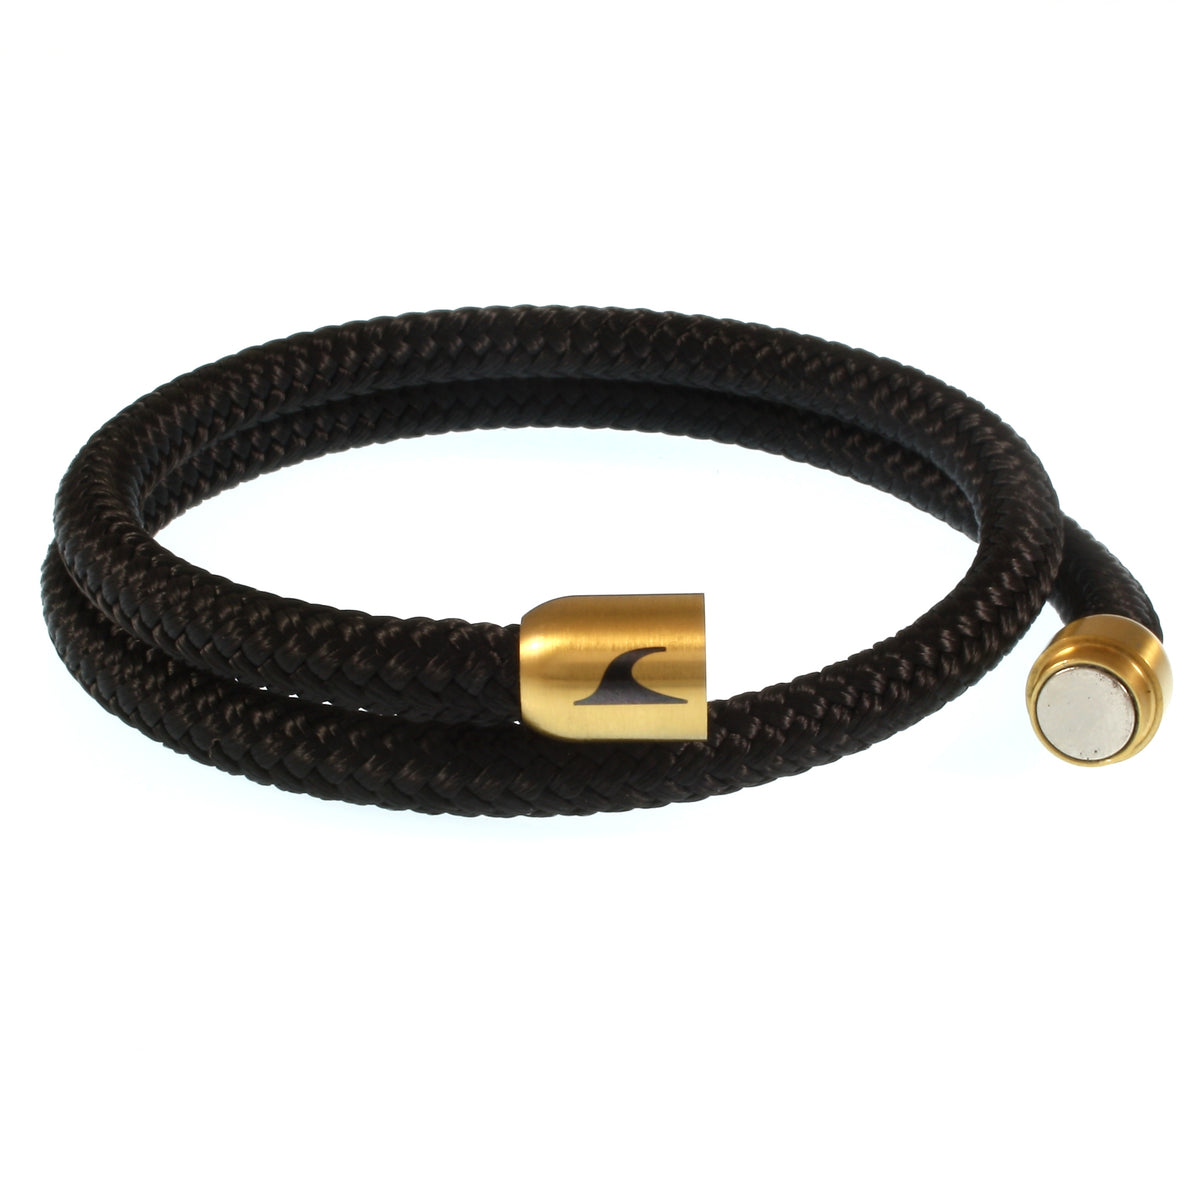 Herren-Segeltau-Armband-hawaii-schwarz-gold-Edelstahlverschluss-offen-wavepirate-shop-st